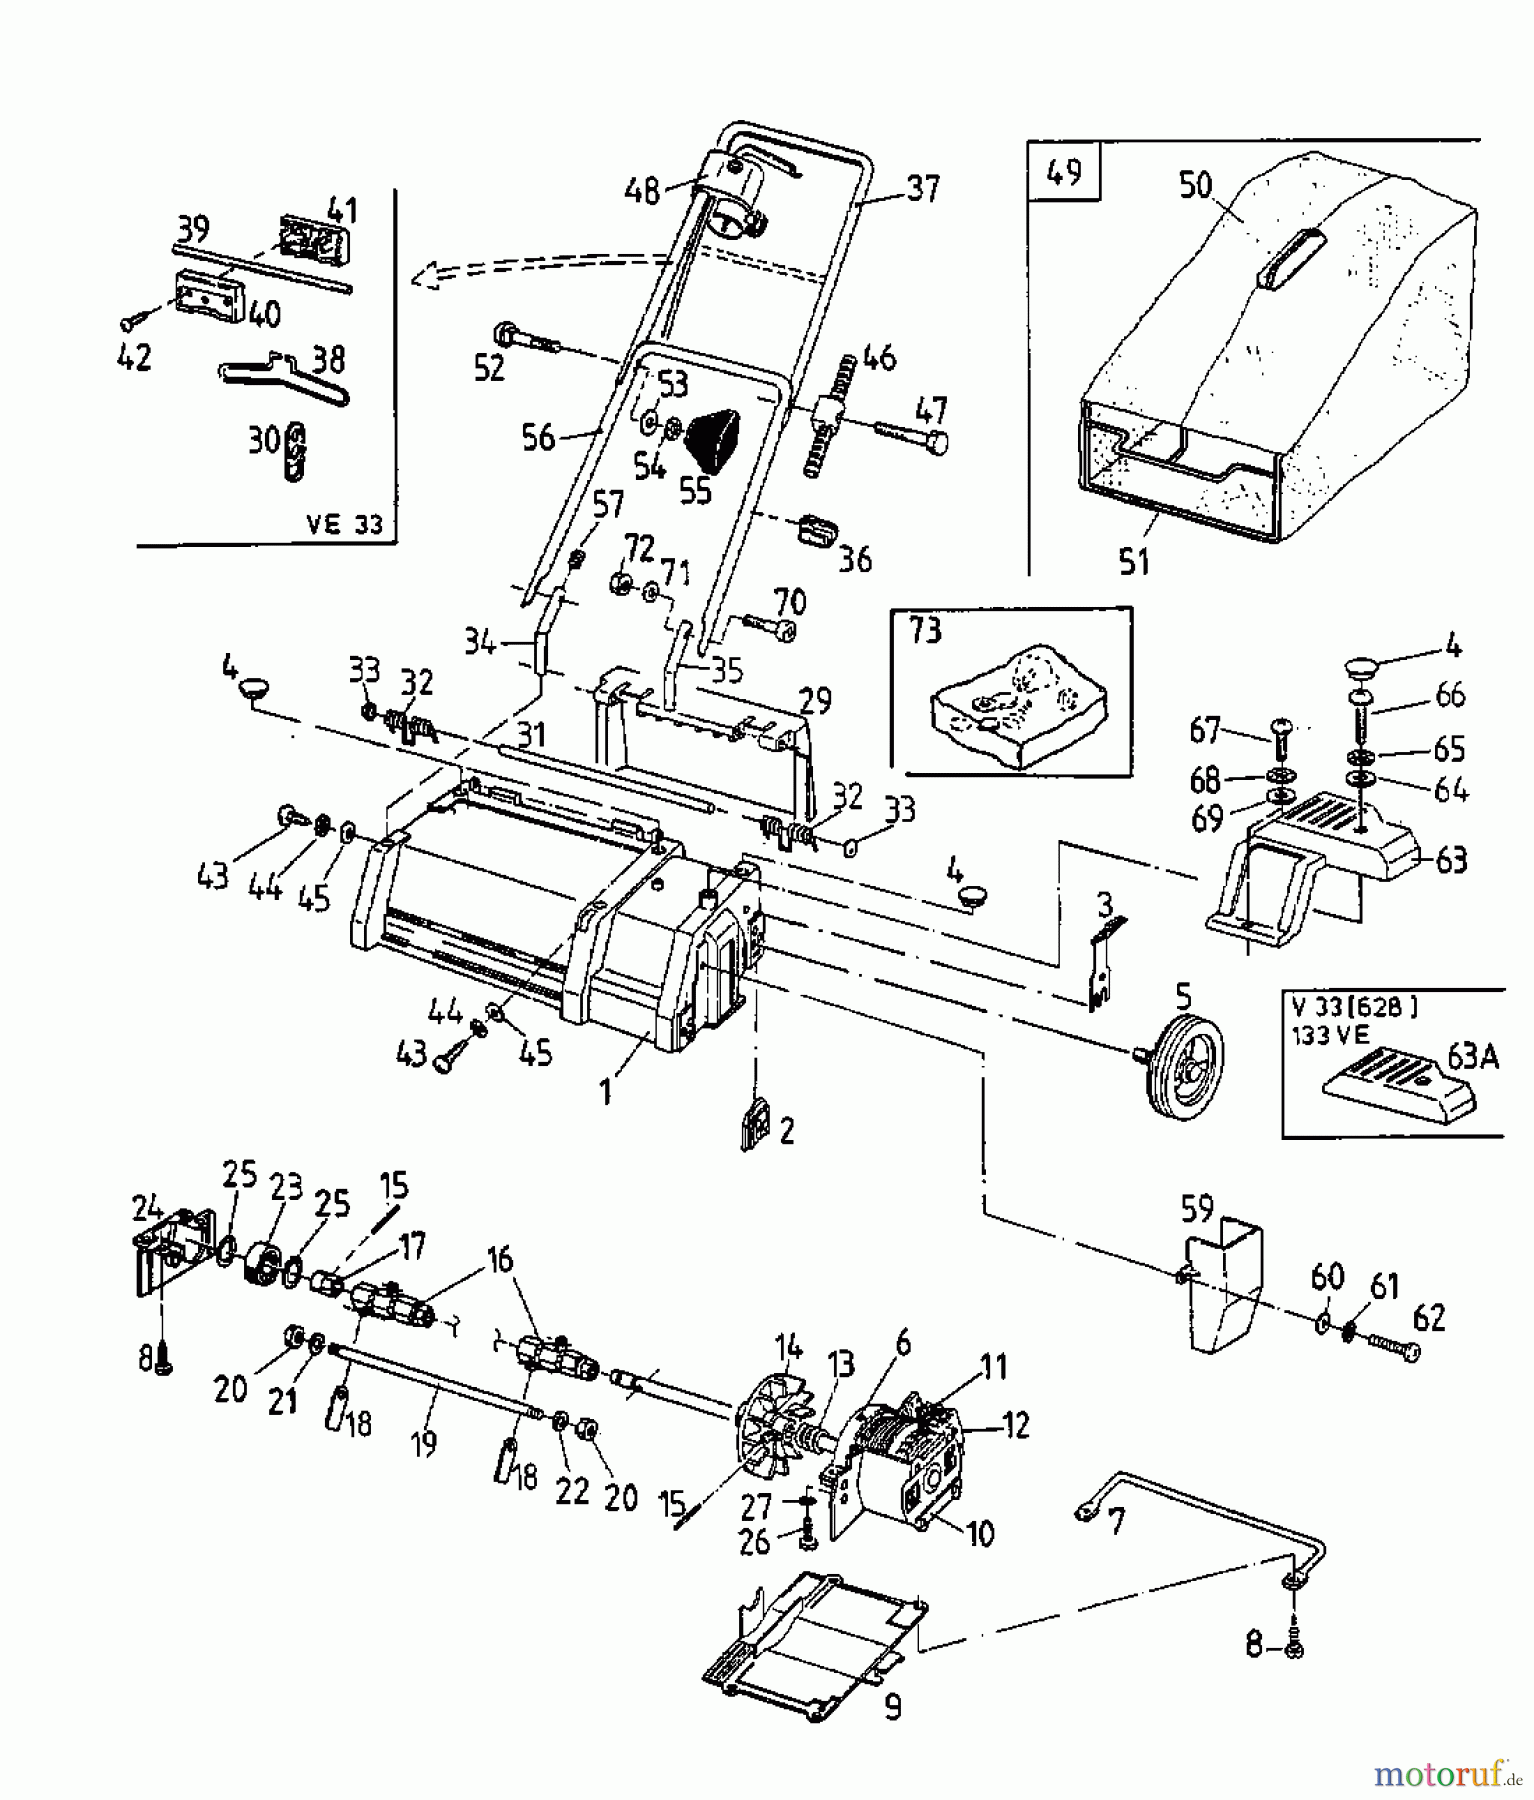  Raiffeisen Elektrovertikutierer V 33 16AEA0D-628  (1998) Grundgerät